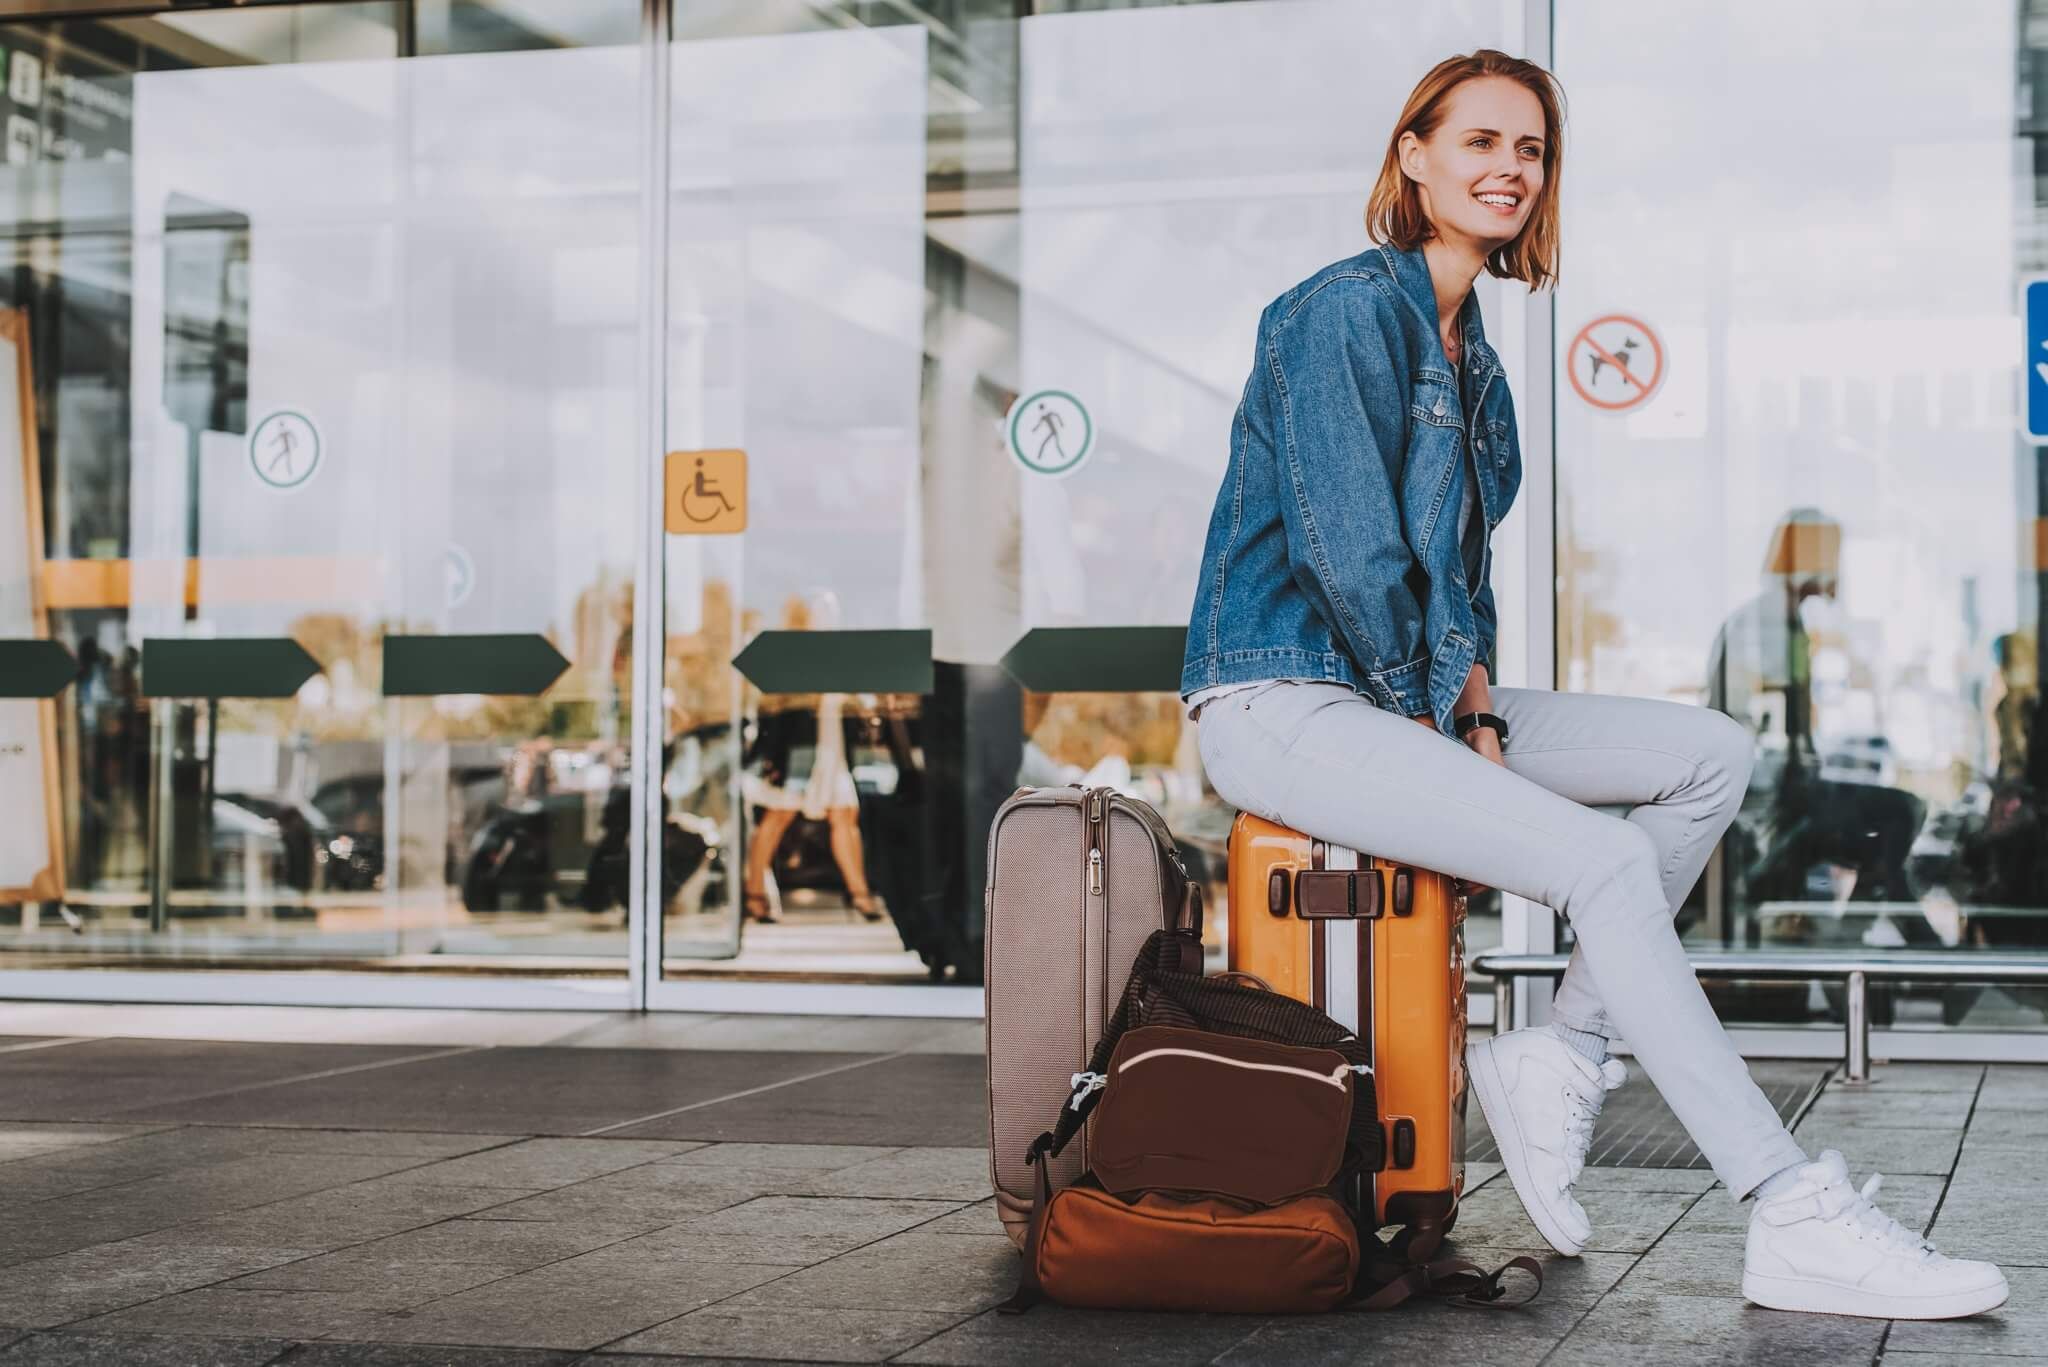 Frau mit Gepäck am Flughafen